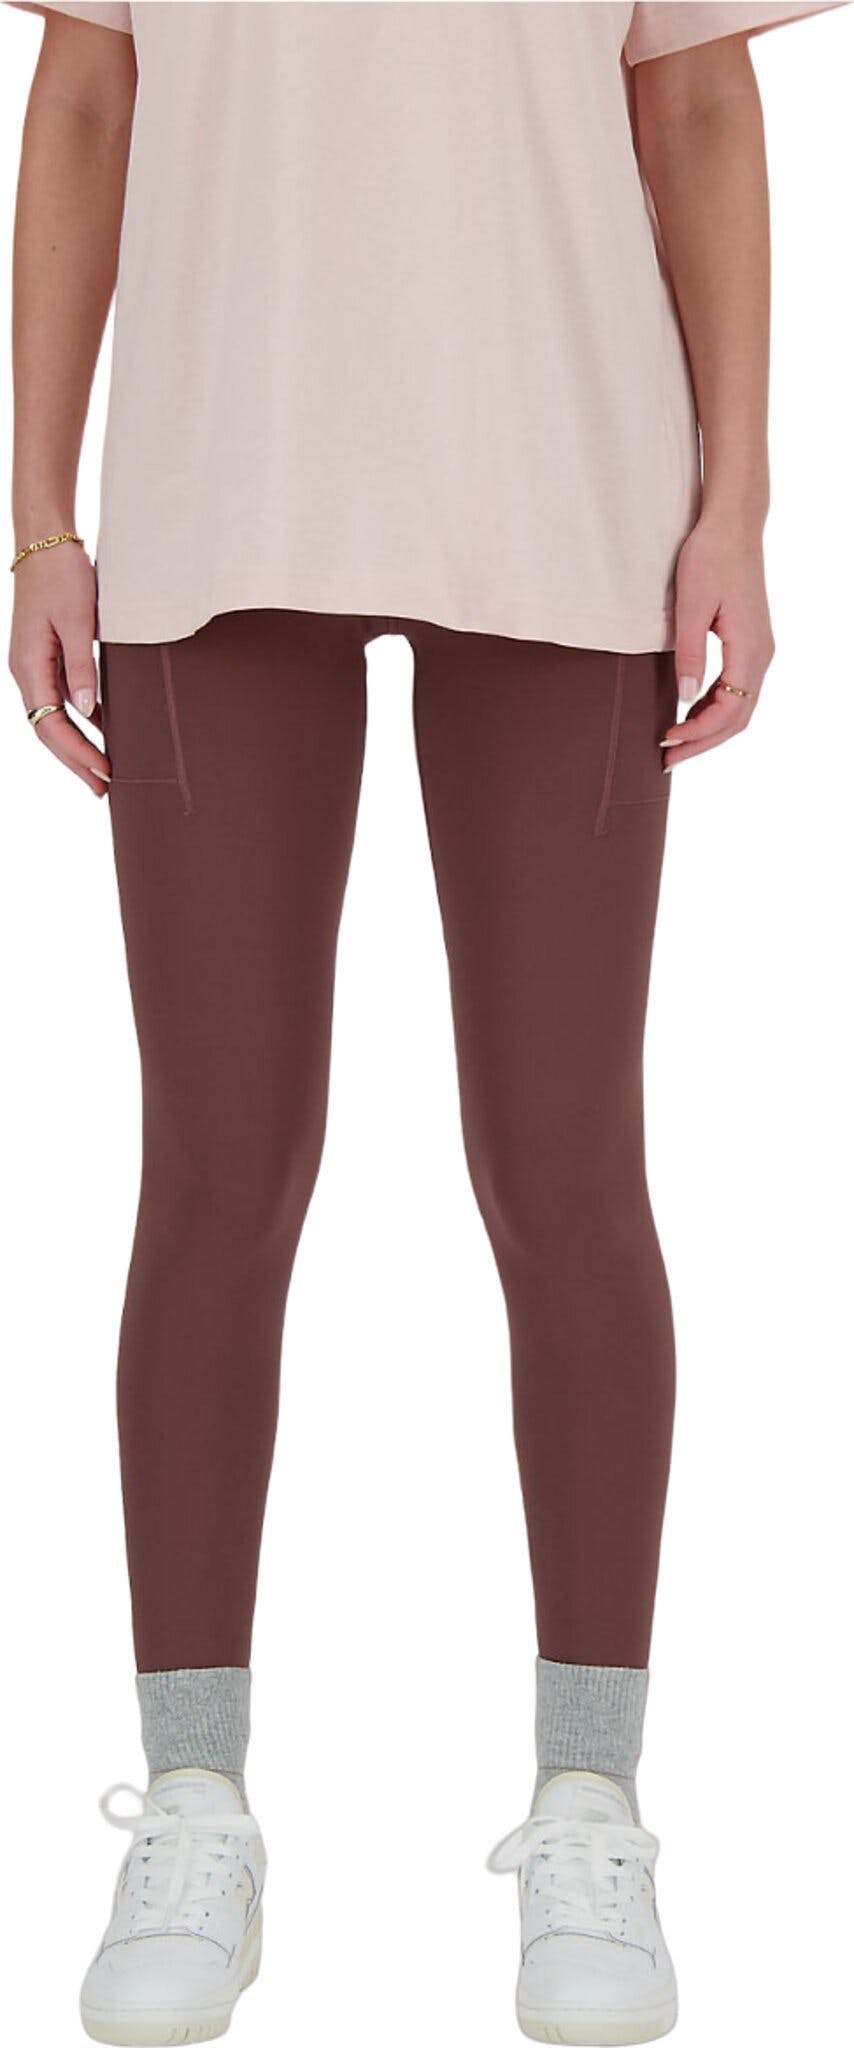 Product image for Sleek Pocket High Rise Legging 27" - Women's